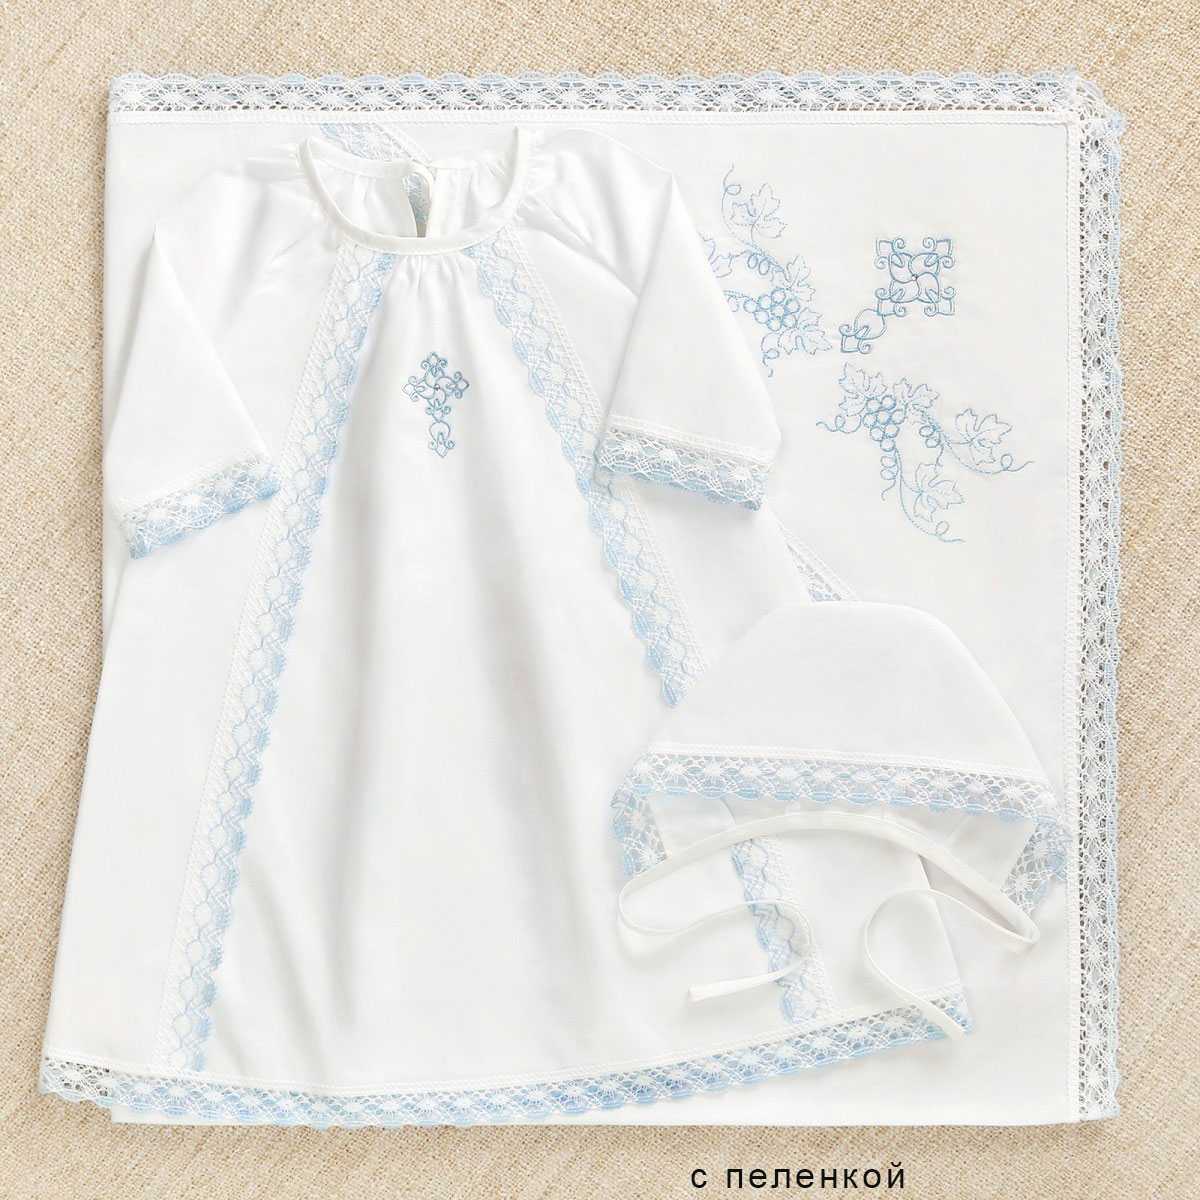 Крестильная рубашка для девочки – это особый наряд, который должен соответствовать всем церковным канонам и быть одновременно нарядным Так какая же должна быть рубашка на крестины и как правильно ее выбрать